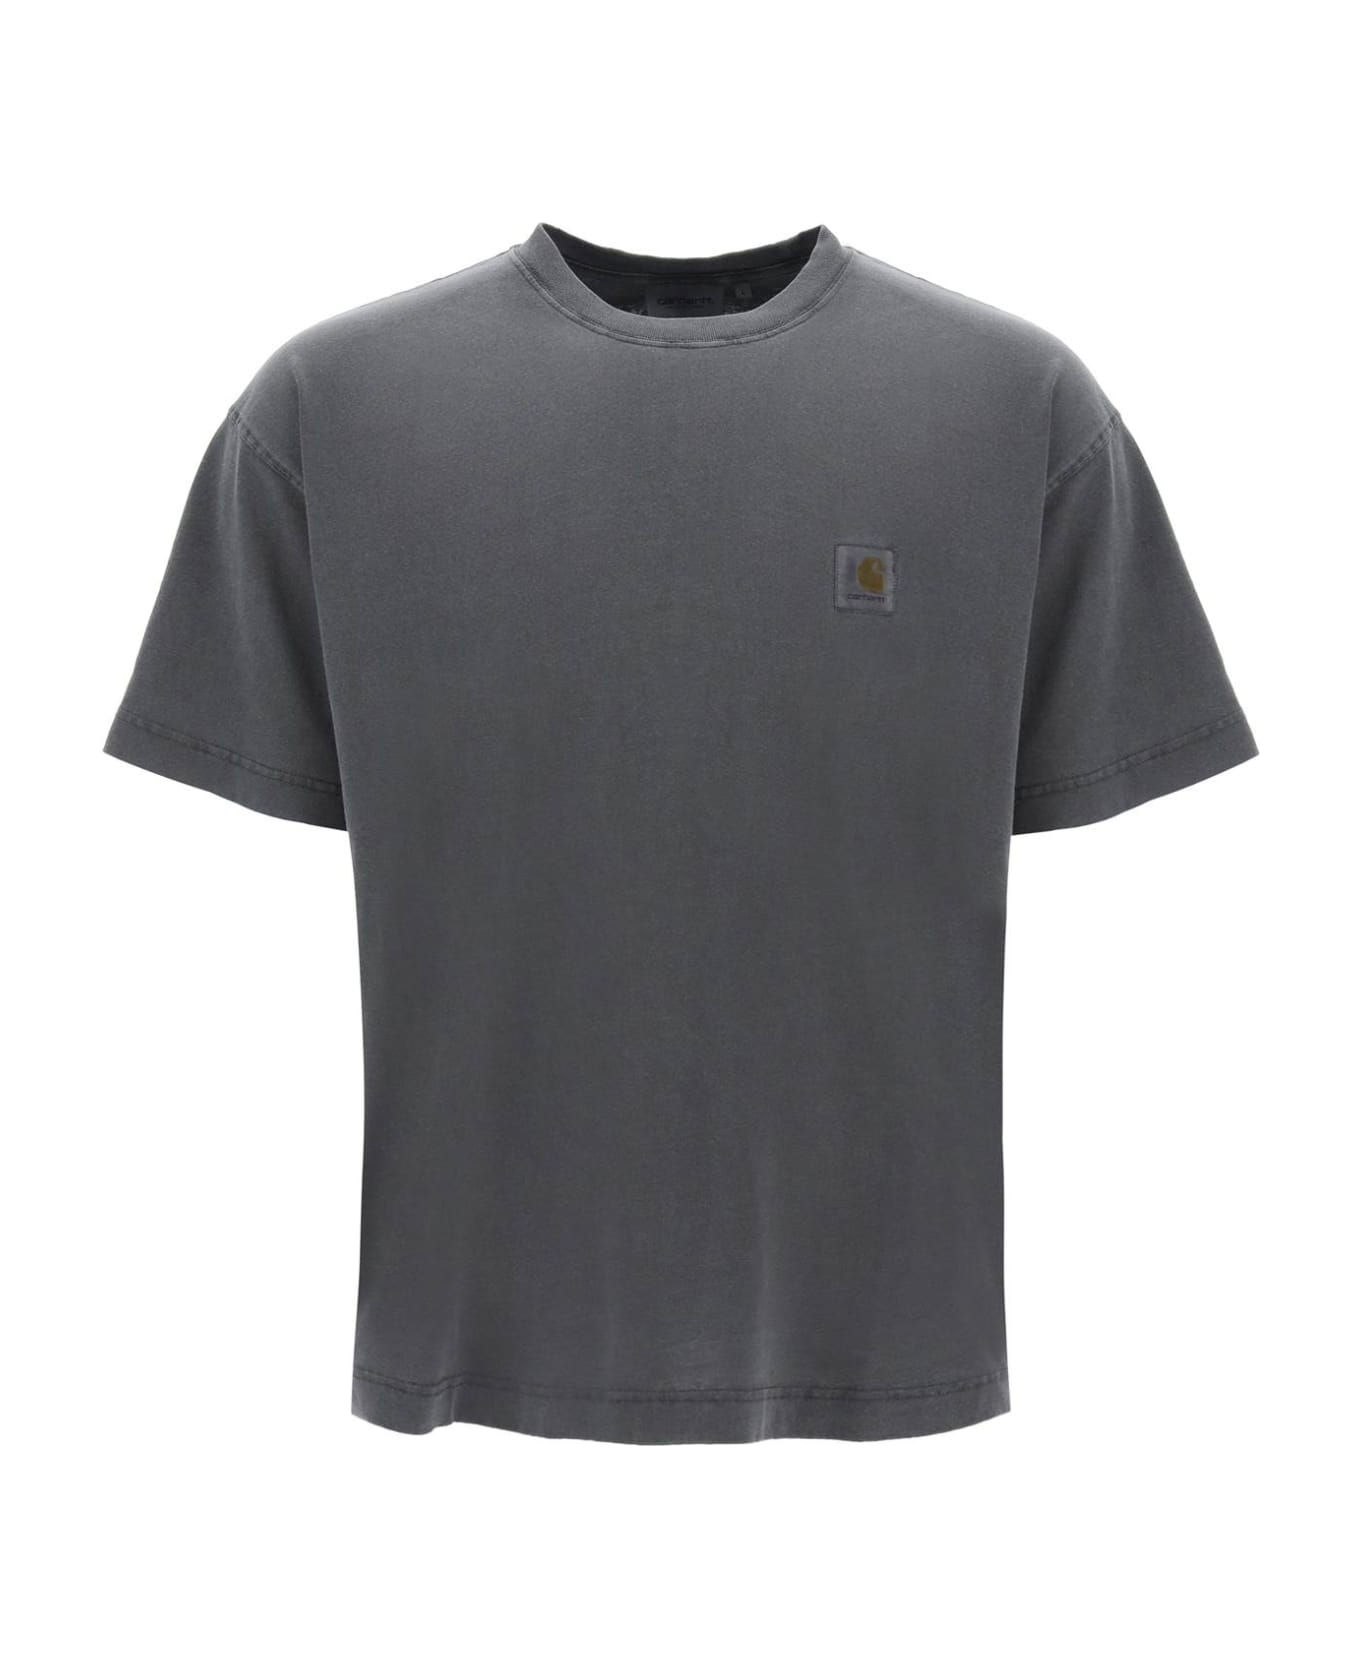 Carhartt Nelson T-shirt - GREY